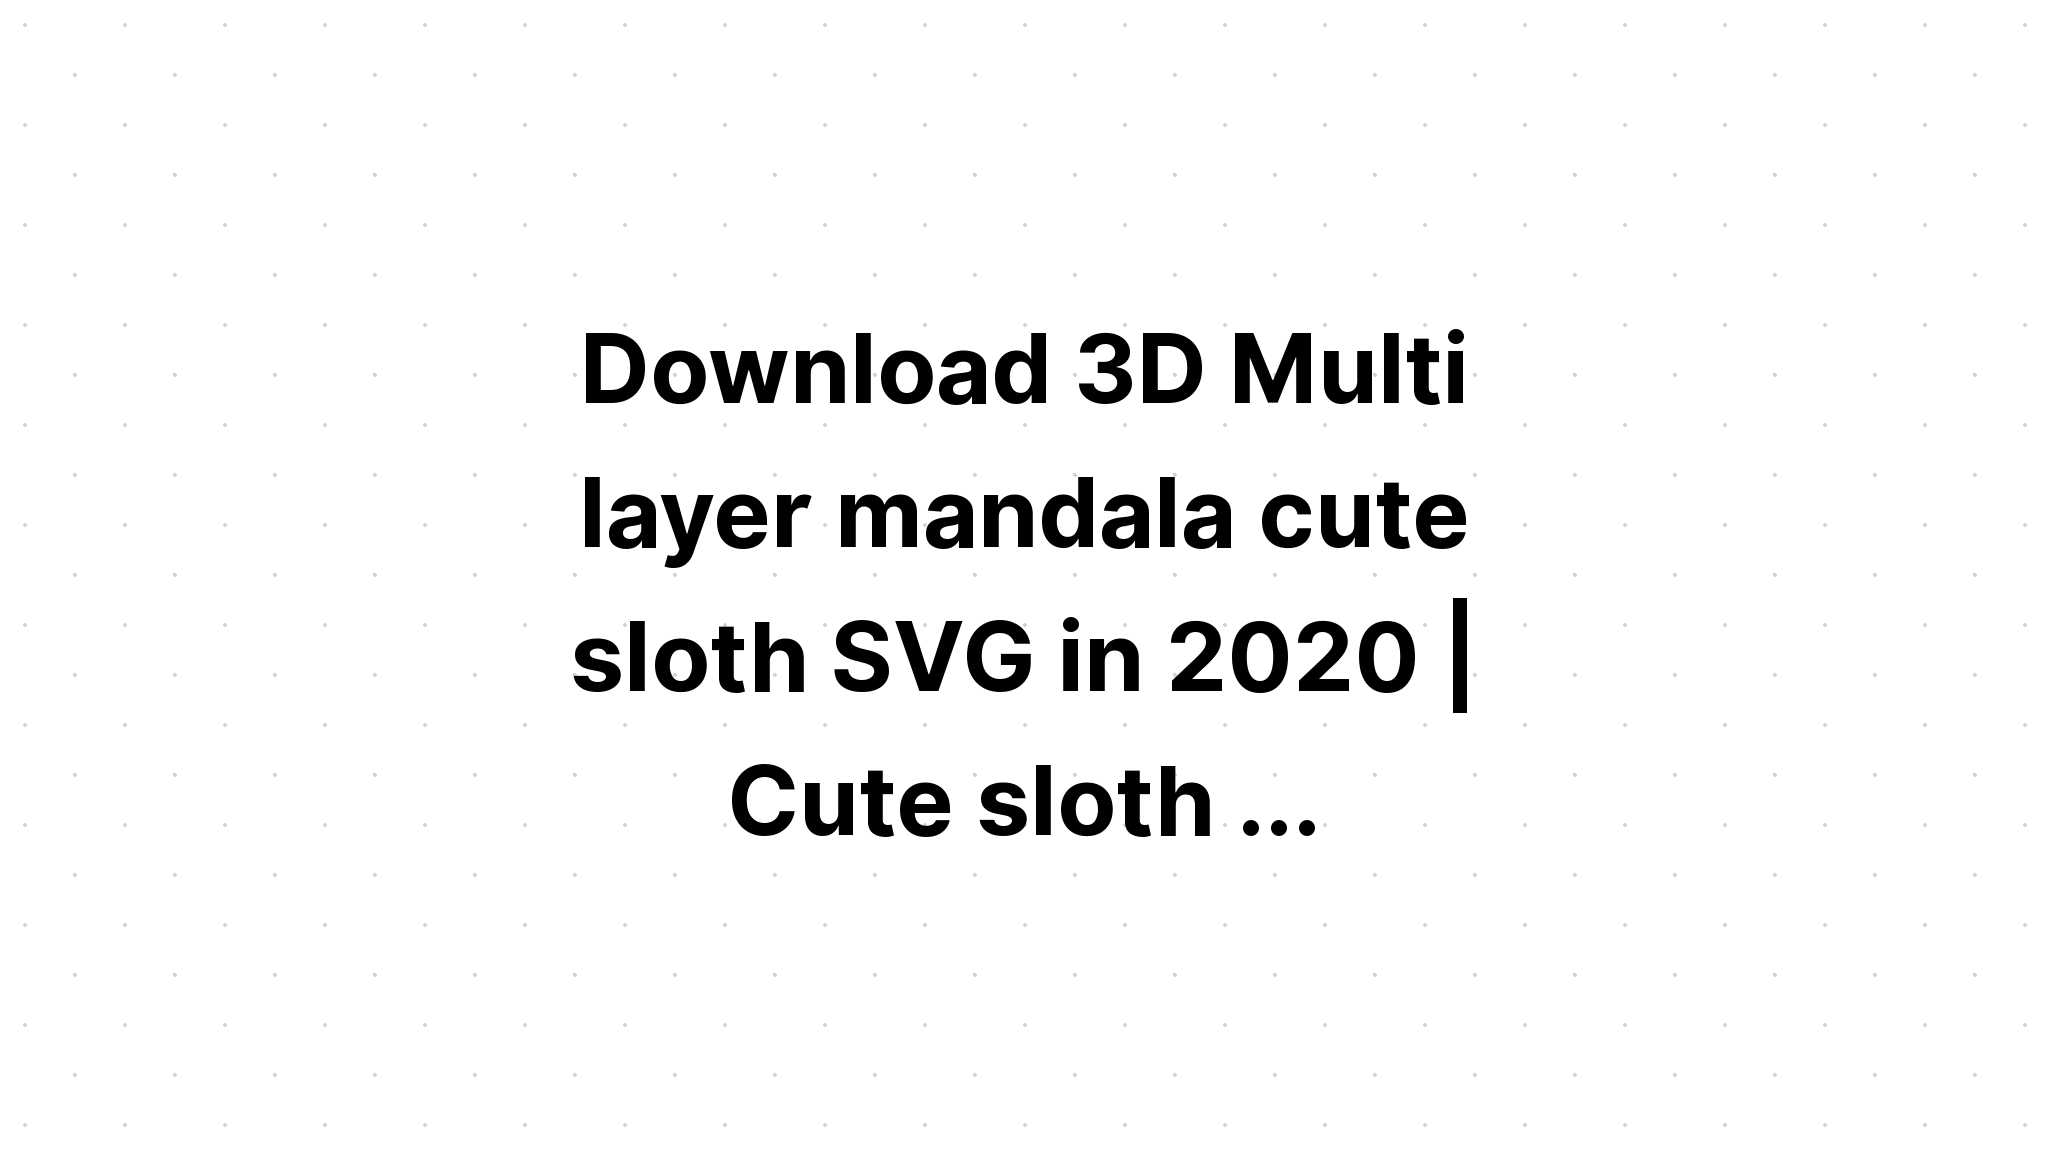 Download Multi Layered Mandala Layered Giraffe Svg - Layered SVG Cut File